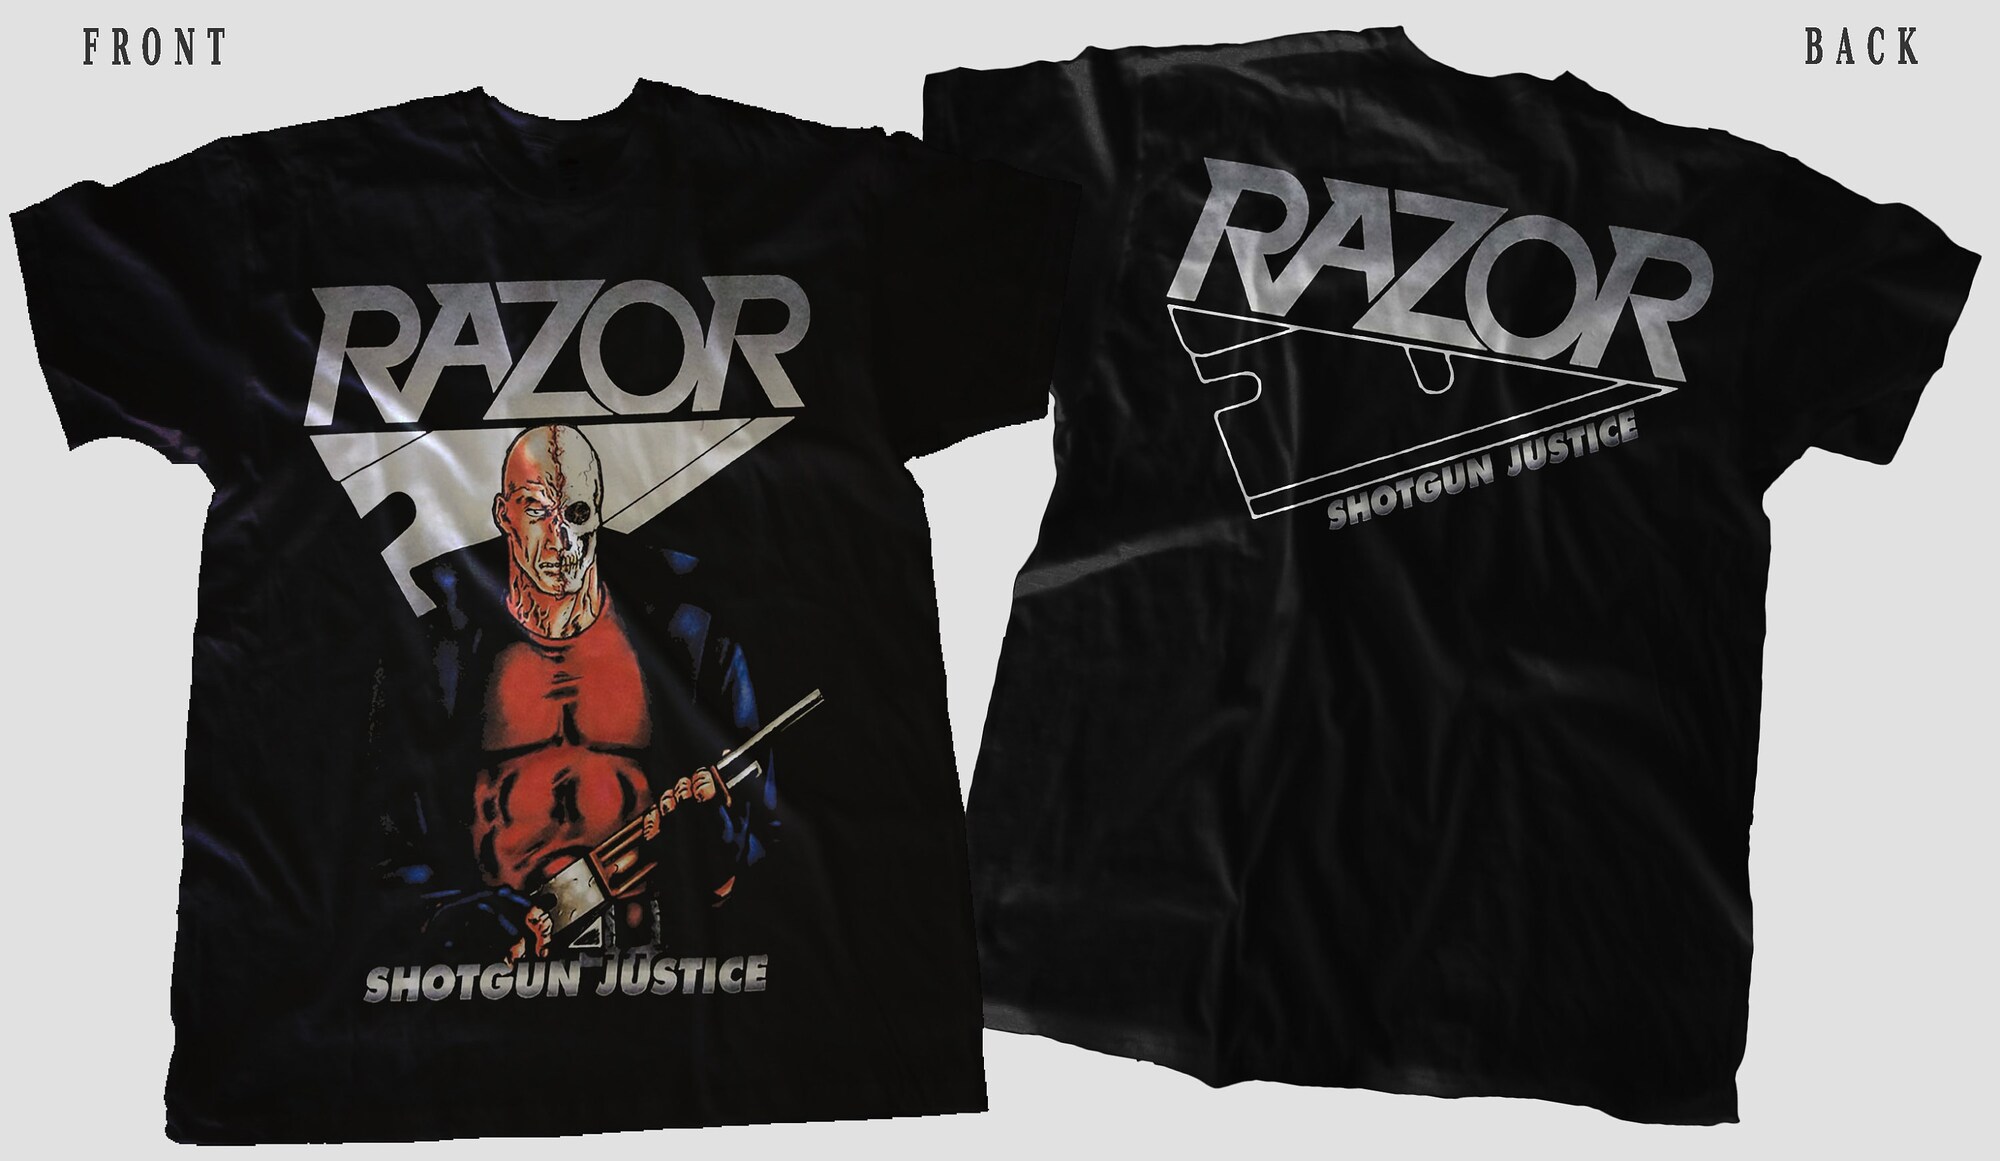 RAZOR - Shotgun Justice t shirt